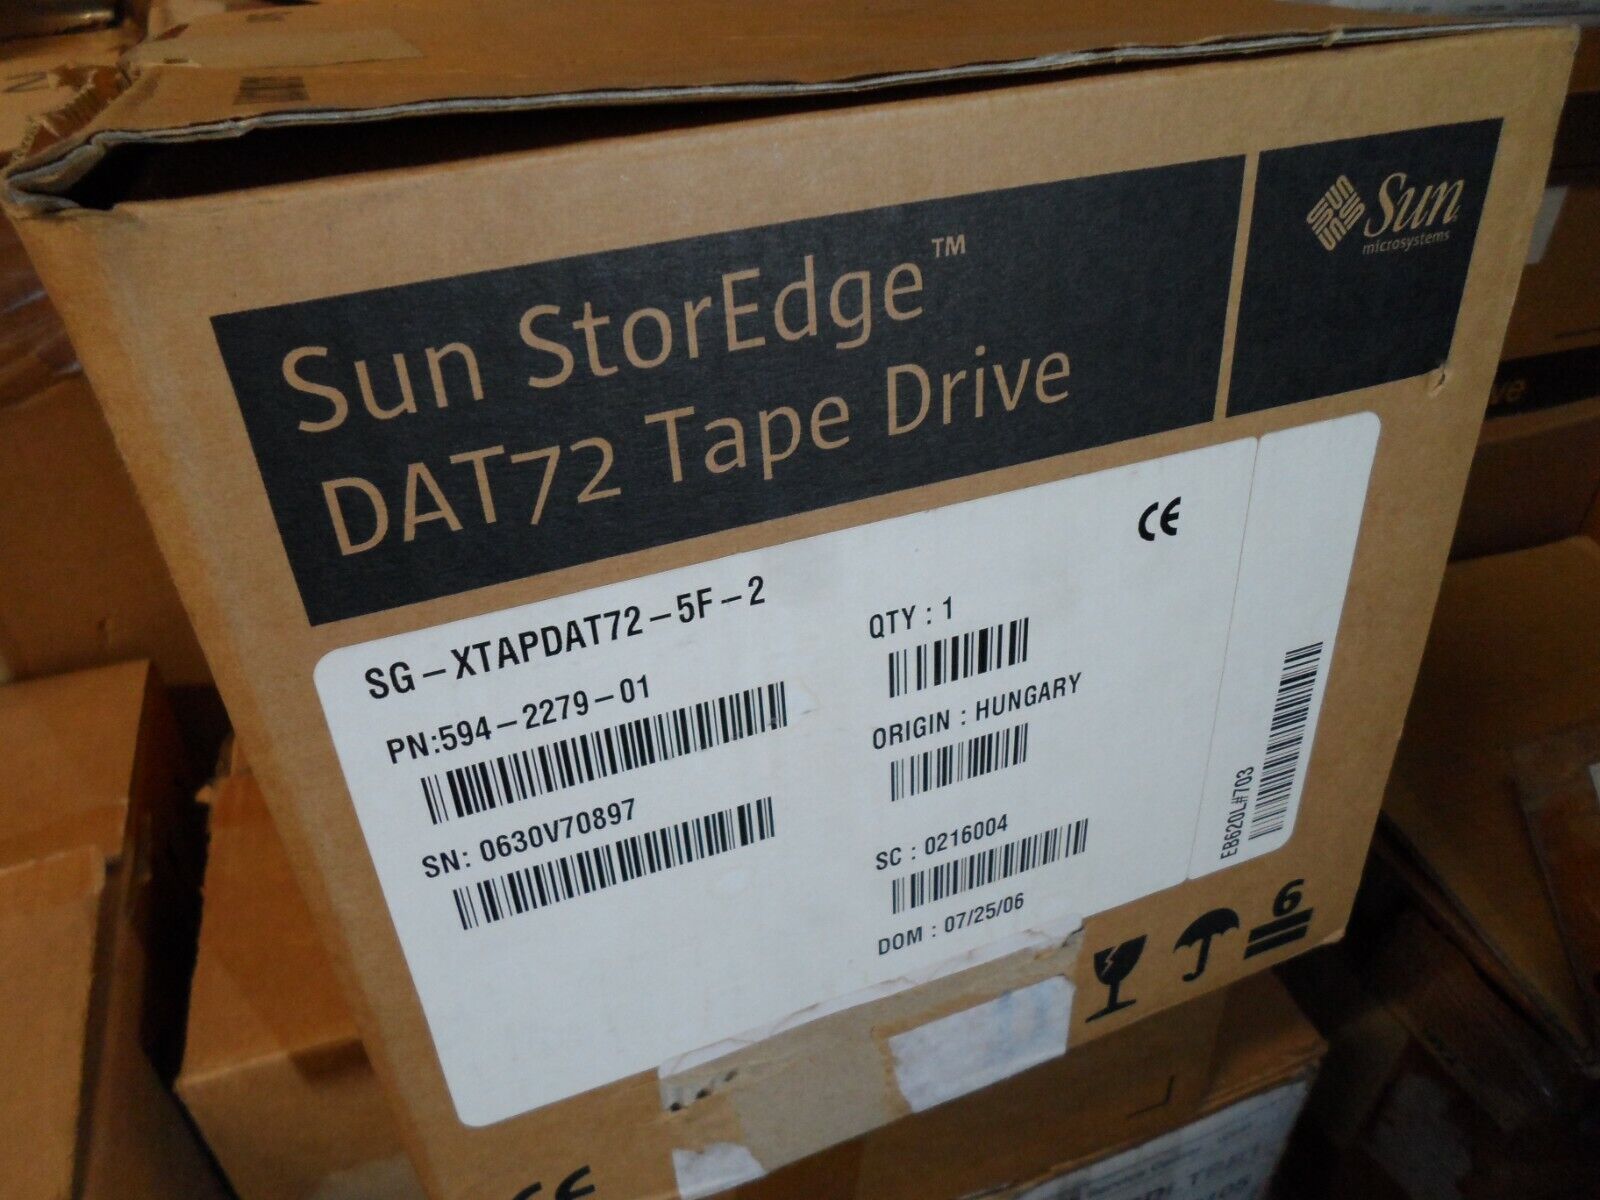 NEW #1 OPEN BOX SUN DAT72 Internal380-1324 SG-XTAPDAT72-5F-2 dds5 Tape Drive